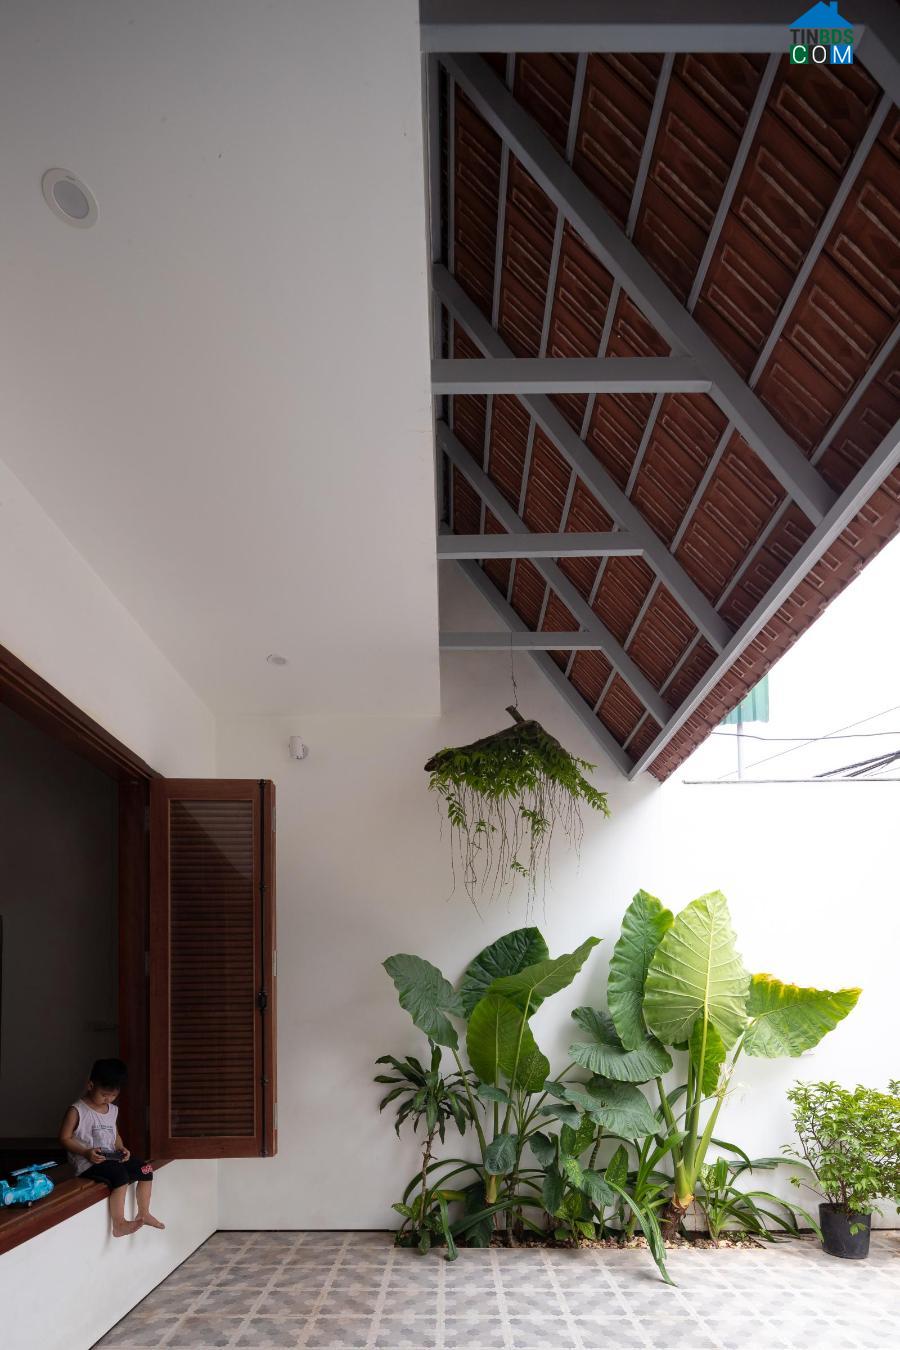 Về giải pháp kiến trúc, 3 hệ mái trượt hình thành nên các khoảng đệm chuyển tiếp không gian cho ngôi nhà.